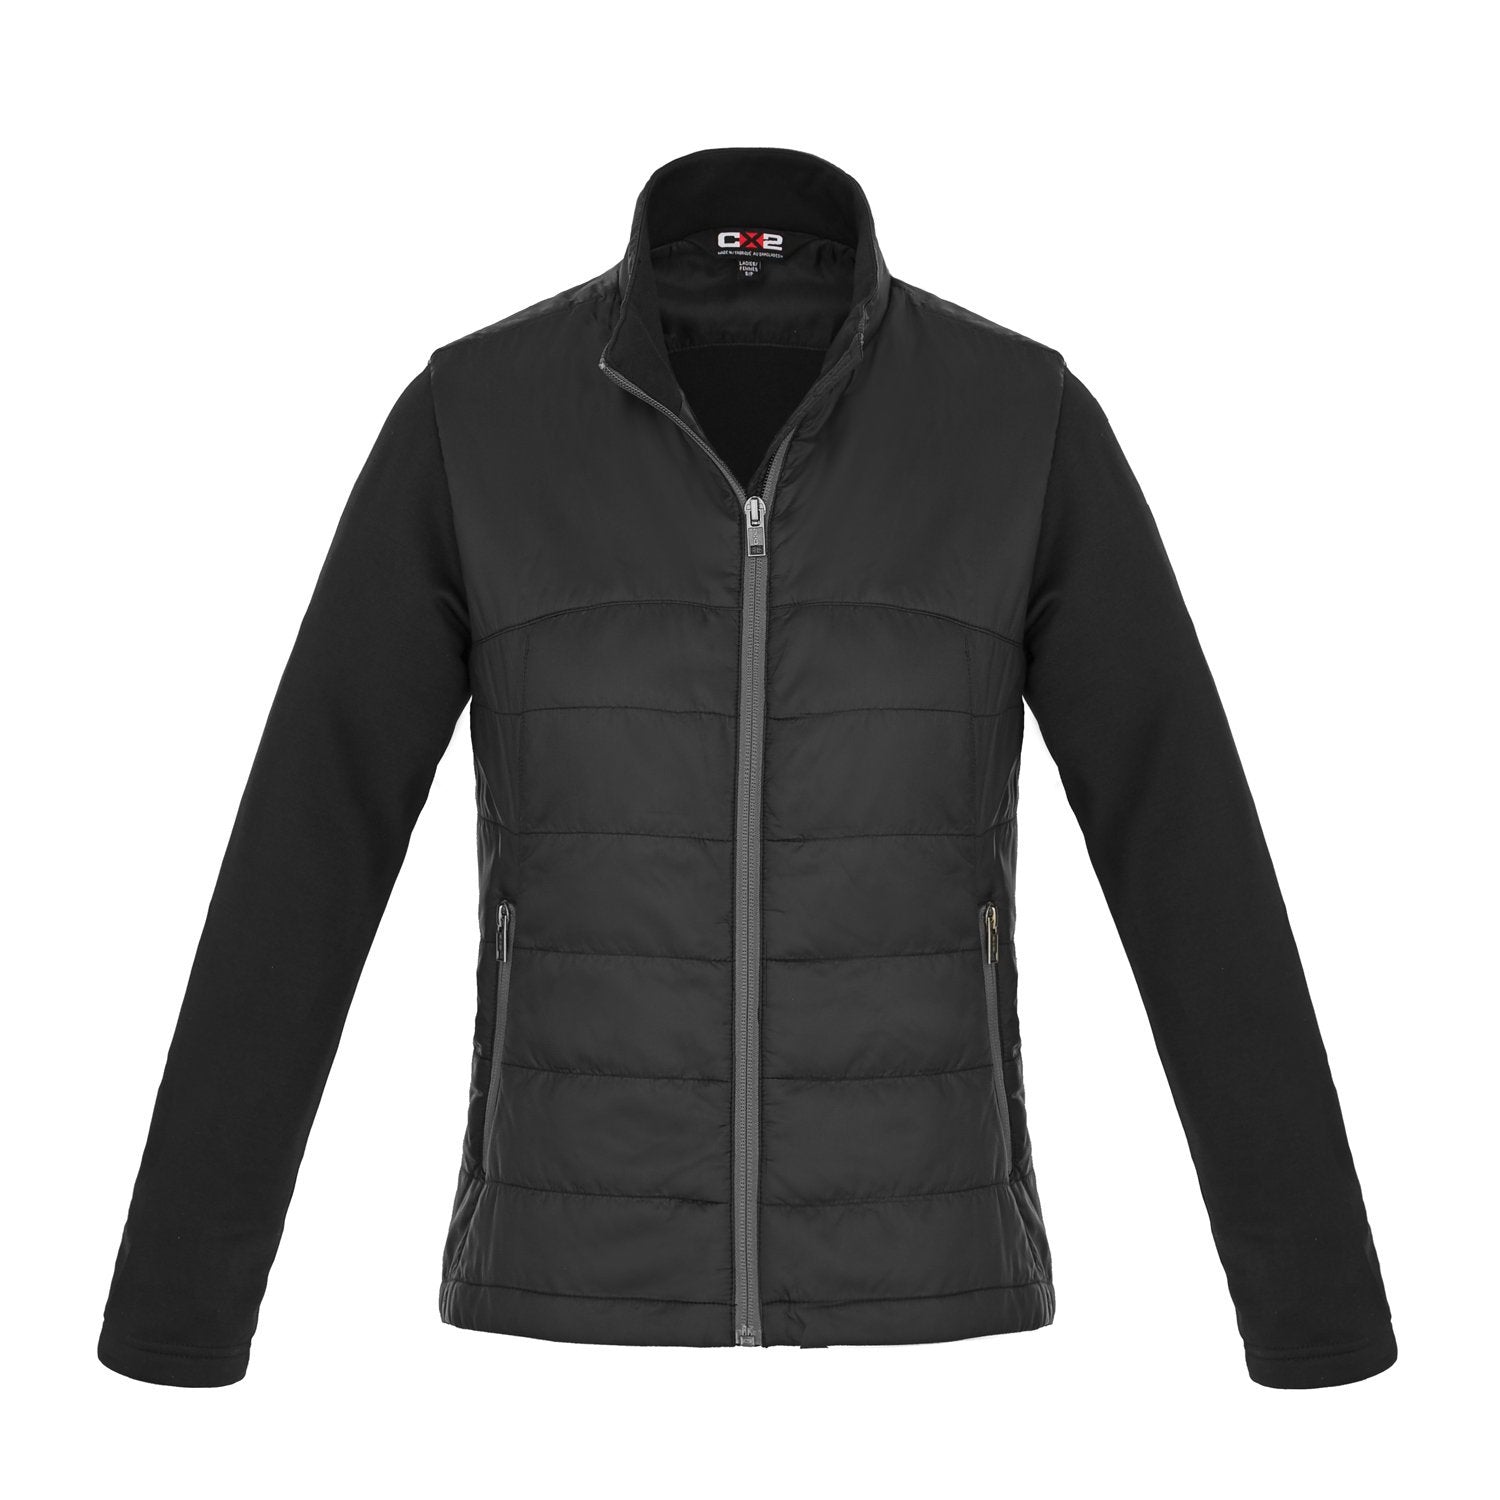 Canada Sportswear  - Hybrid Lightweight Jacket: Women's Cut - L09271 - Black